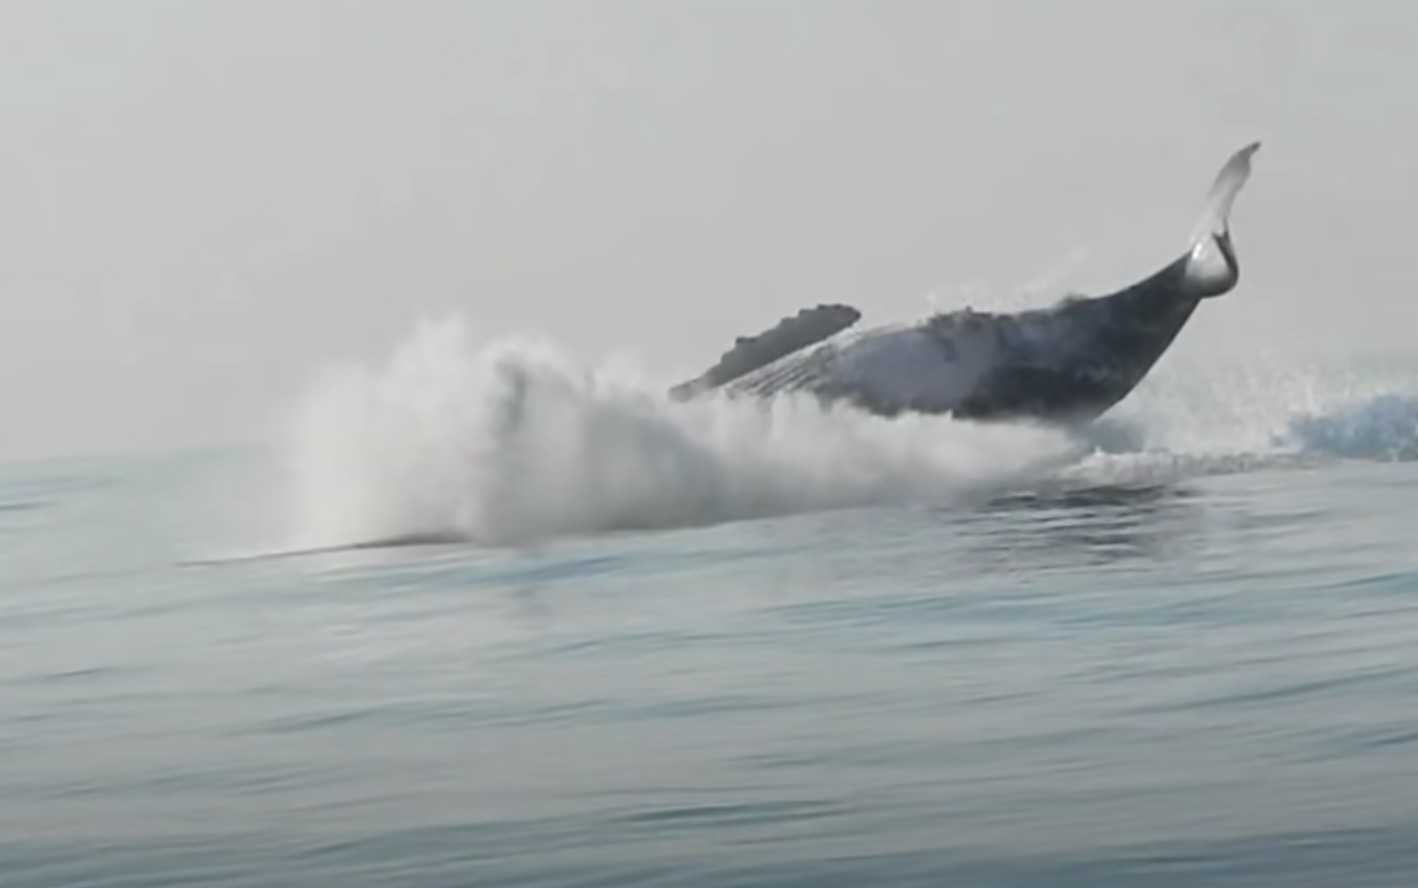 Baleia de 40 toneladas foi filmada pulando completamente para fora da água